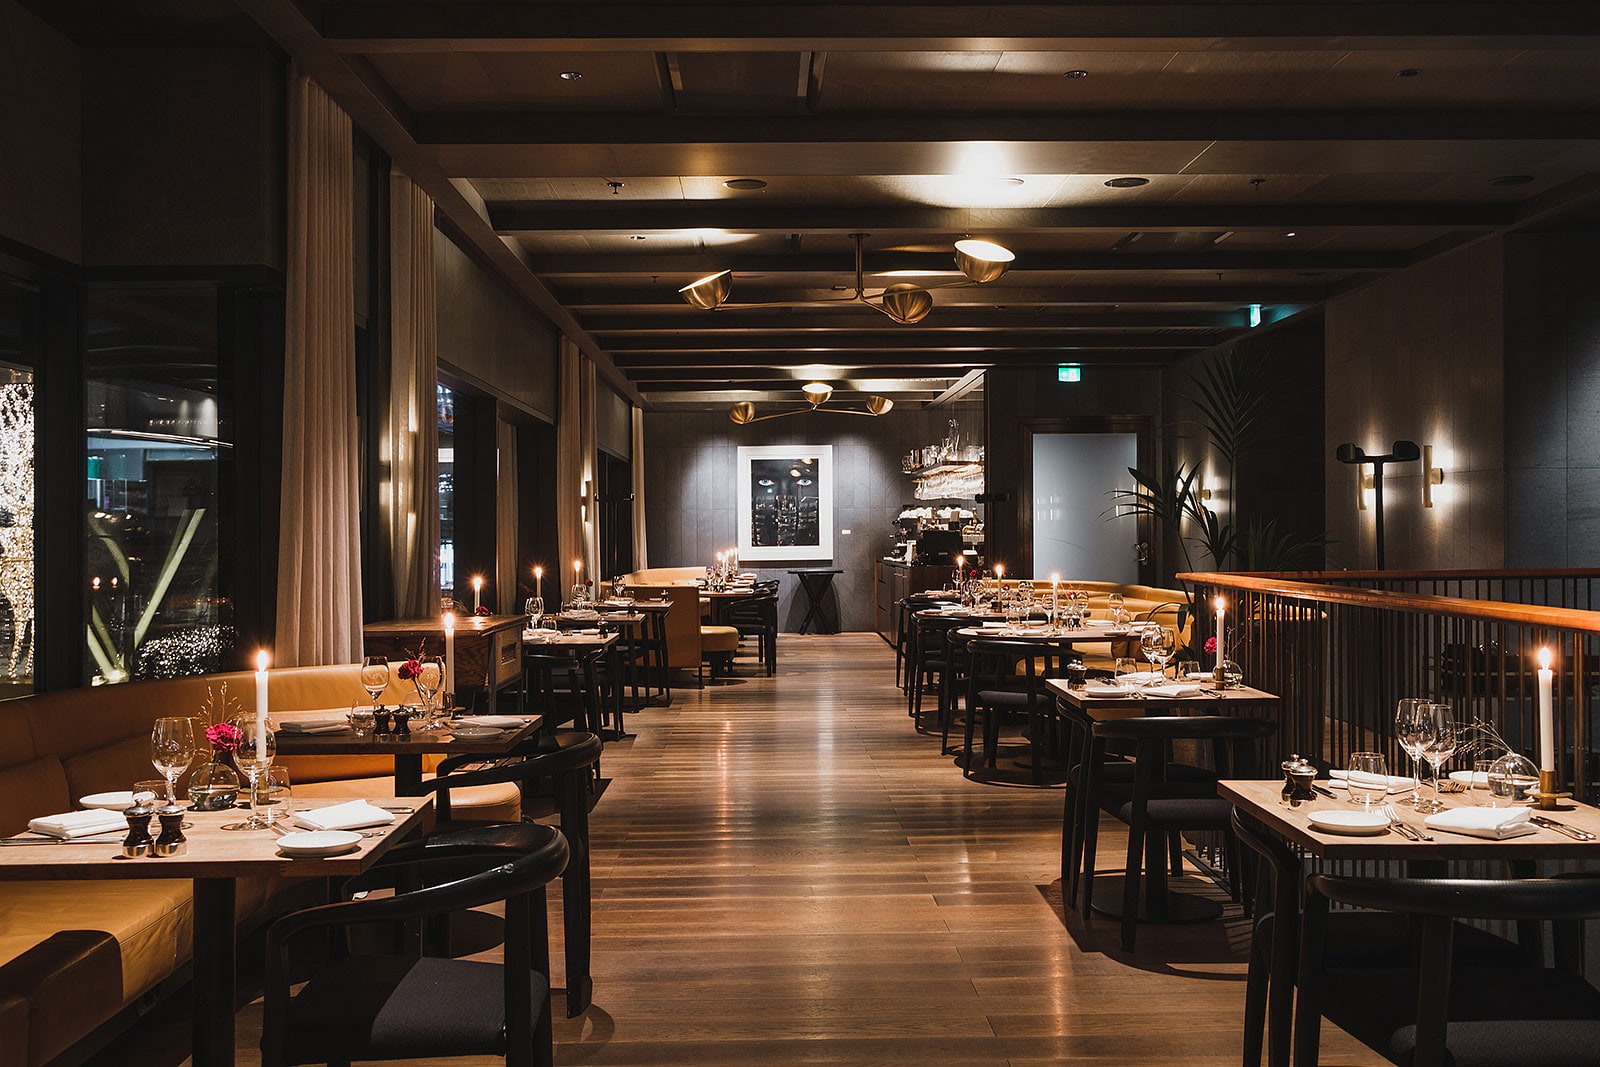 Dining Room & Cocktail Bar At Six – Bästa restaurangerna i city och Norrmalm